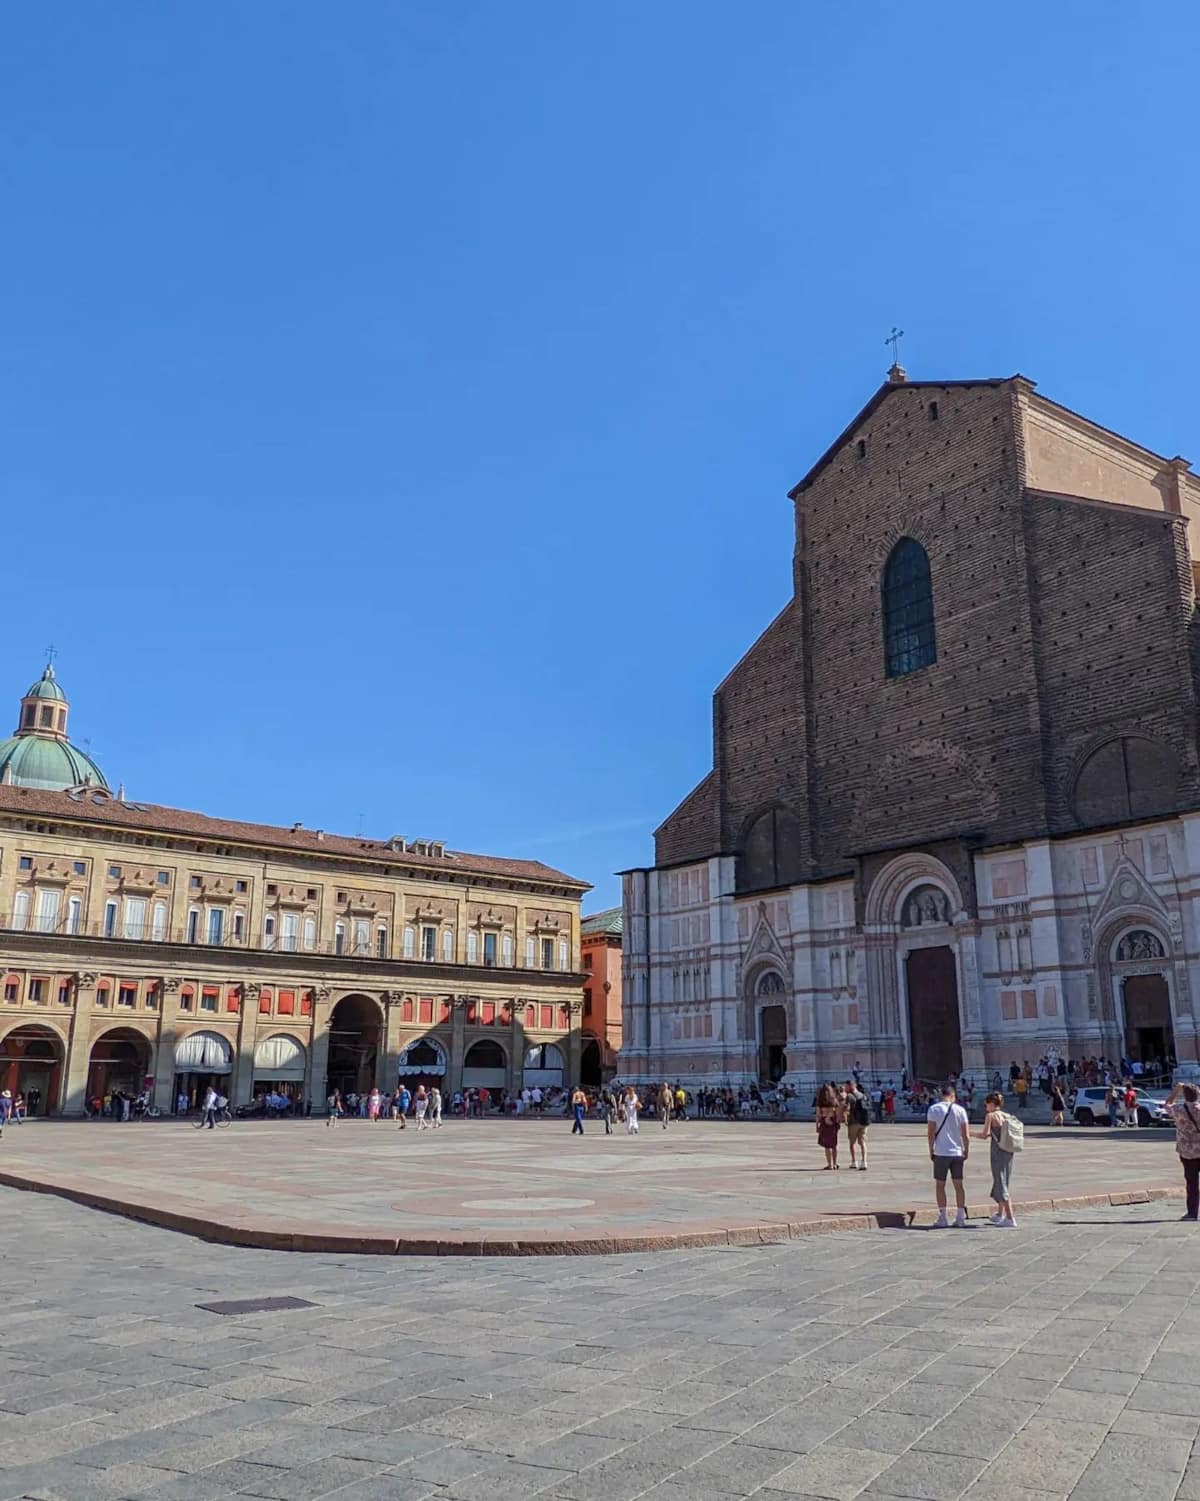 Centro Storico (Historic Center) Bologna